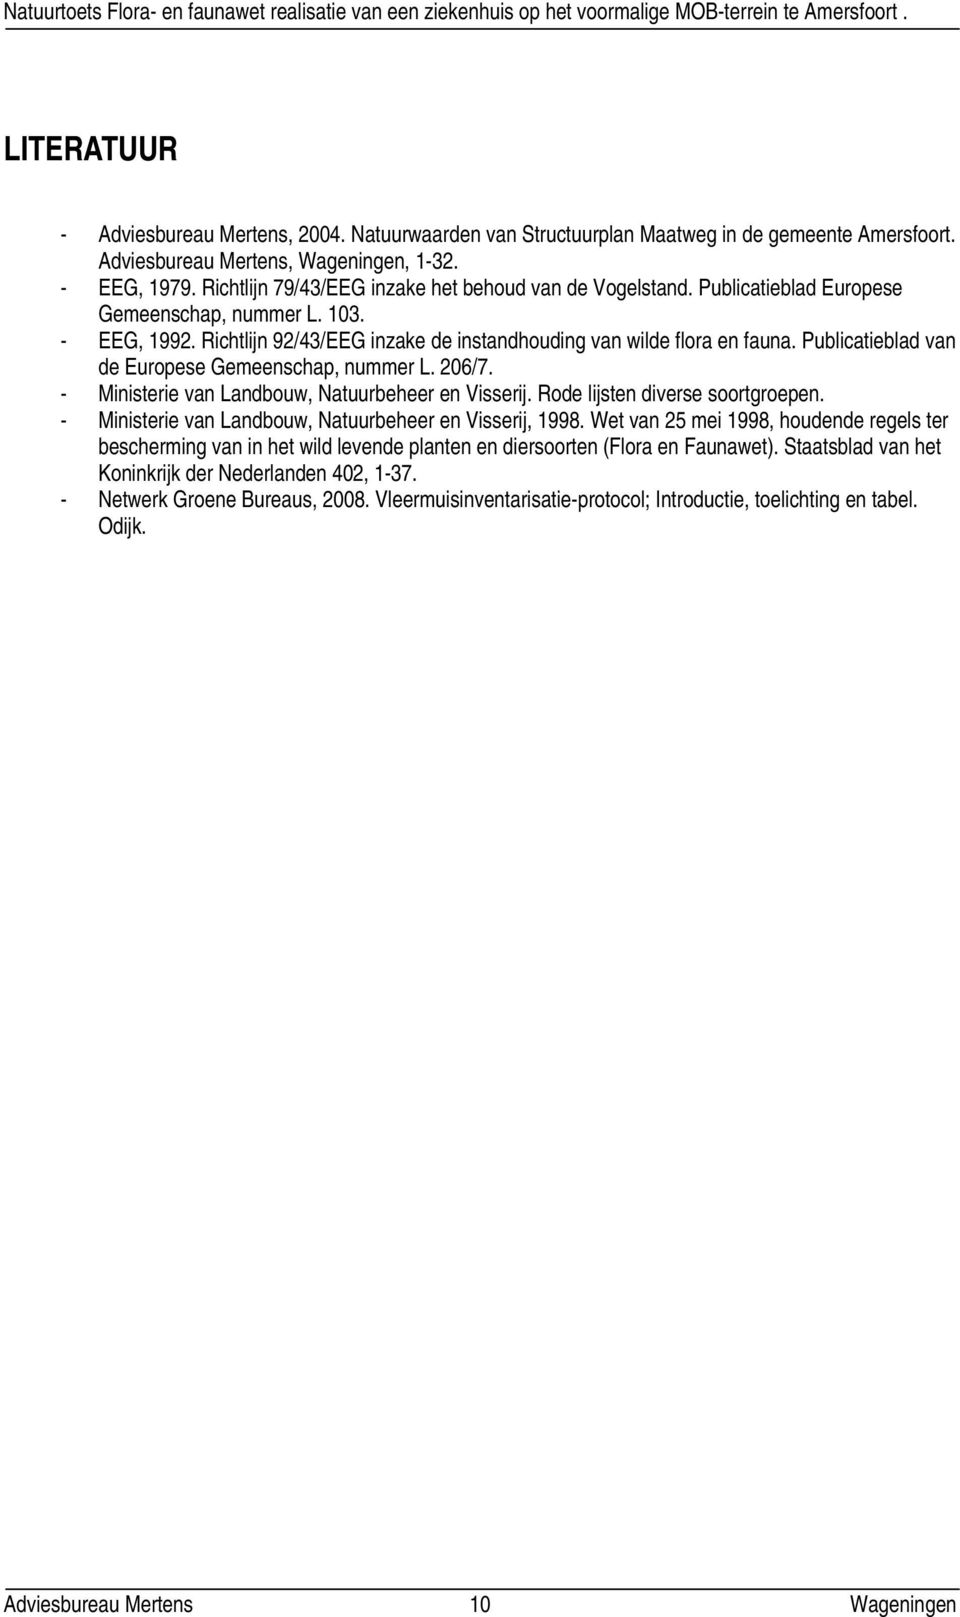 Publicatieblad van de Europese Gemeenschap, nummer L. 206/7. - Ministerie van Landbouw, Natuurbeheer en Visserij. Rode lijsten diverse soortgroepen.